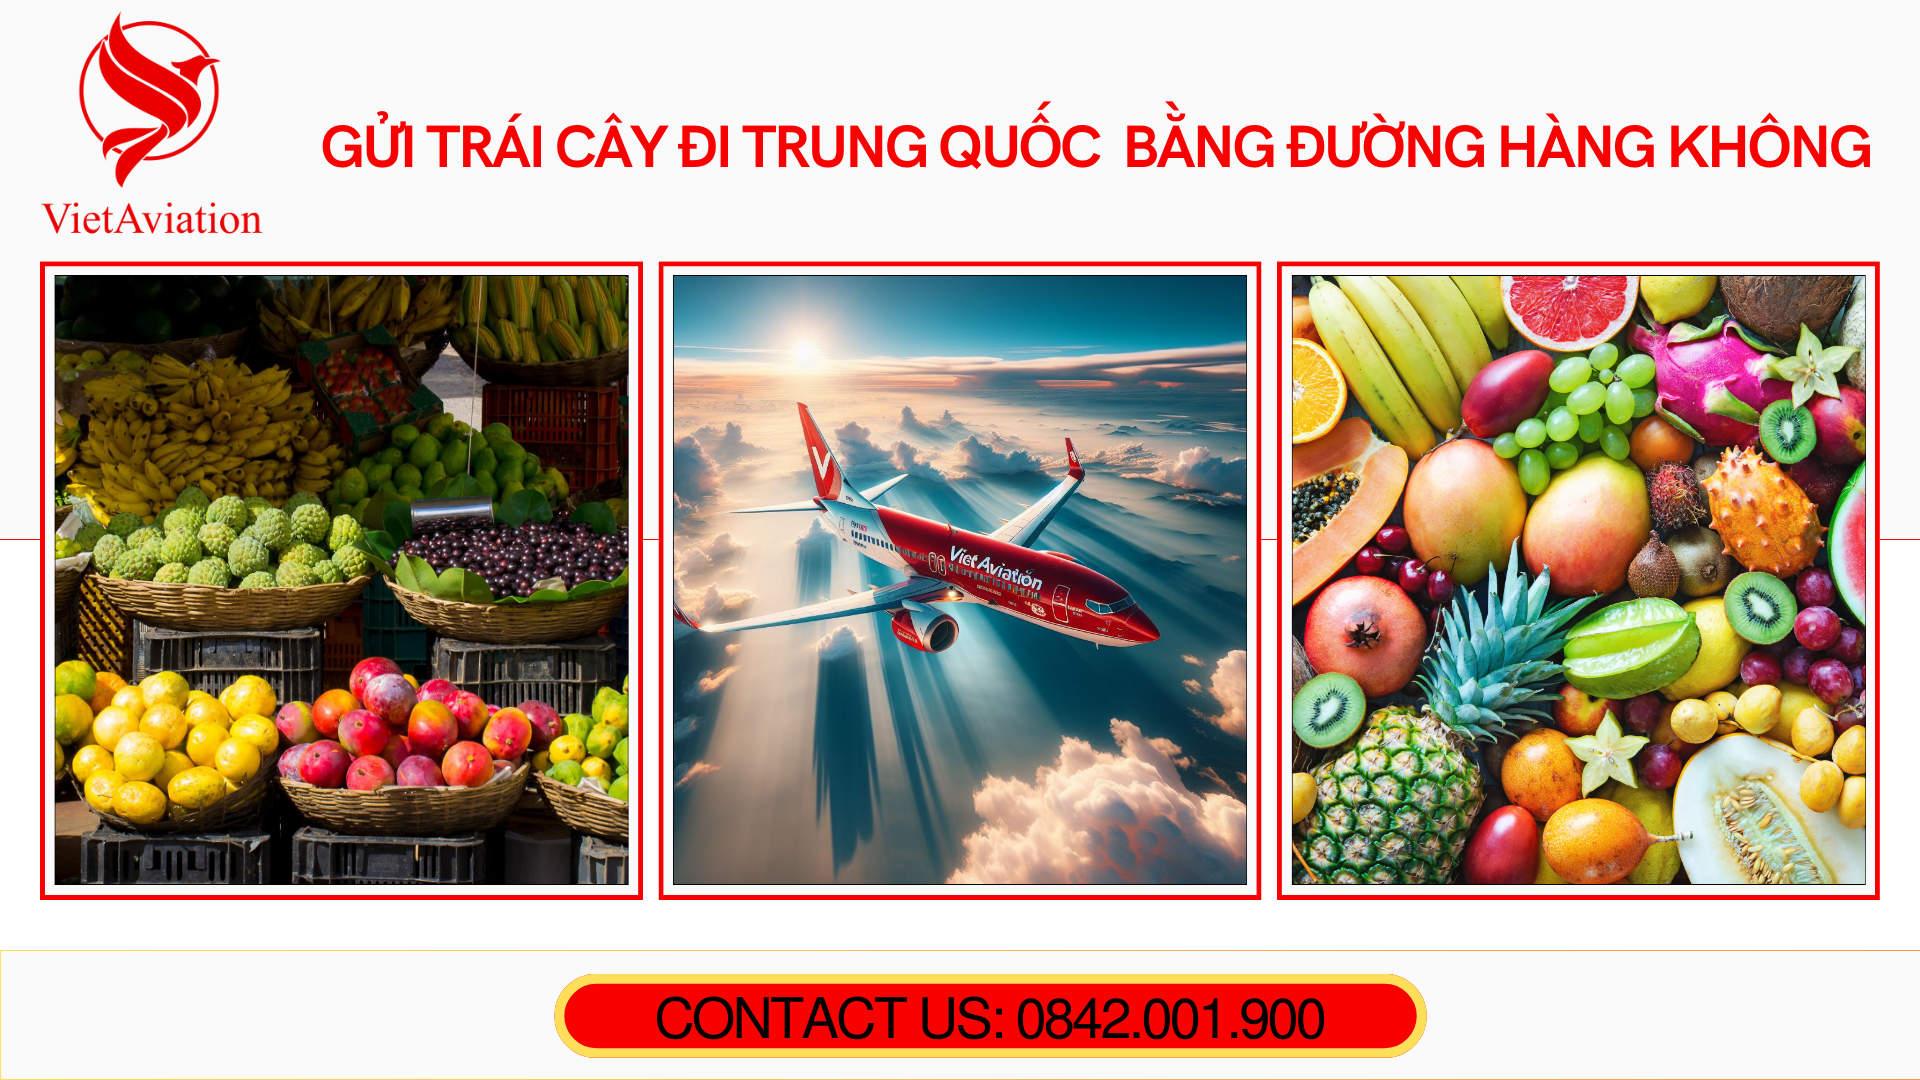 Gửi trái cây đi Trung Quốc bằng đường hàng không